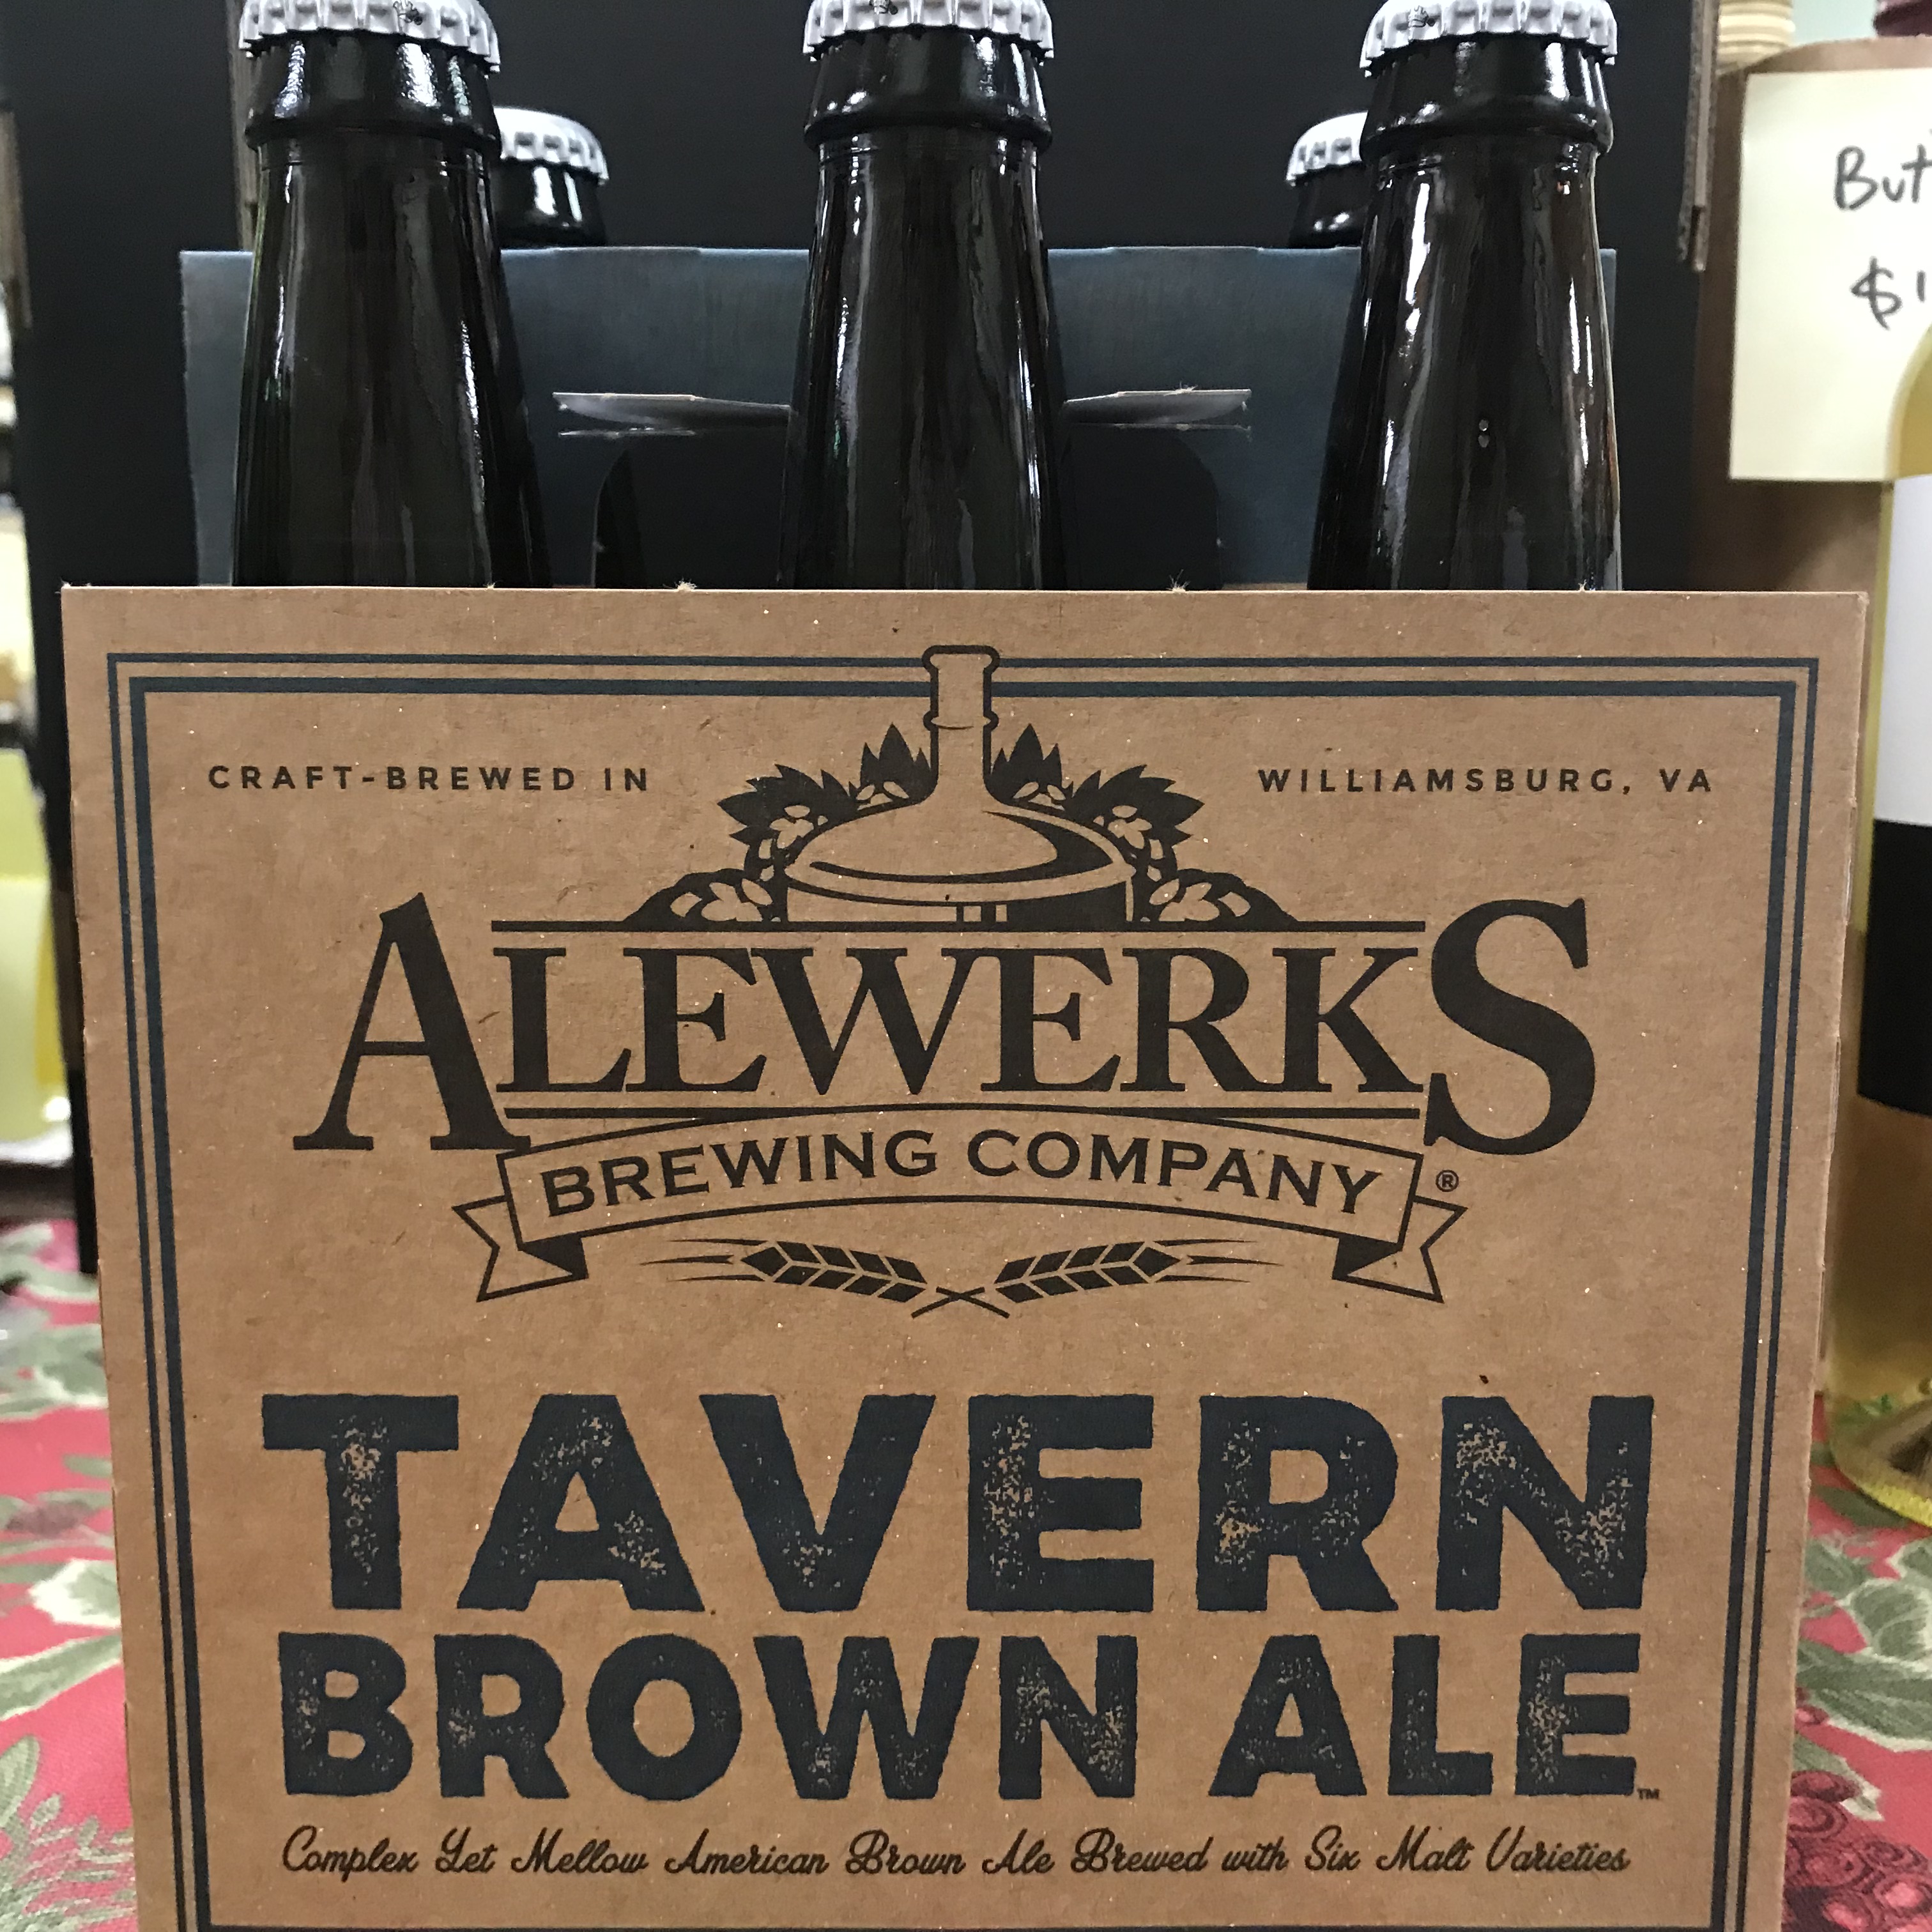 Alewerks Tavern Brown Ale 6 pack 12oz bottles